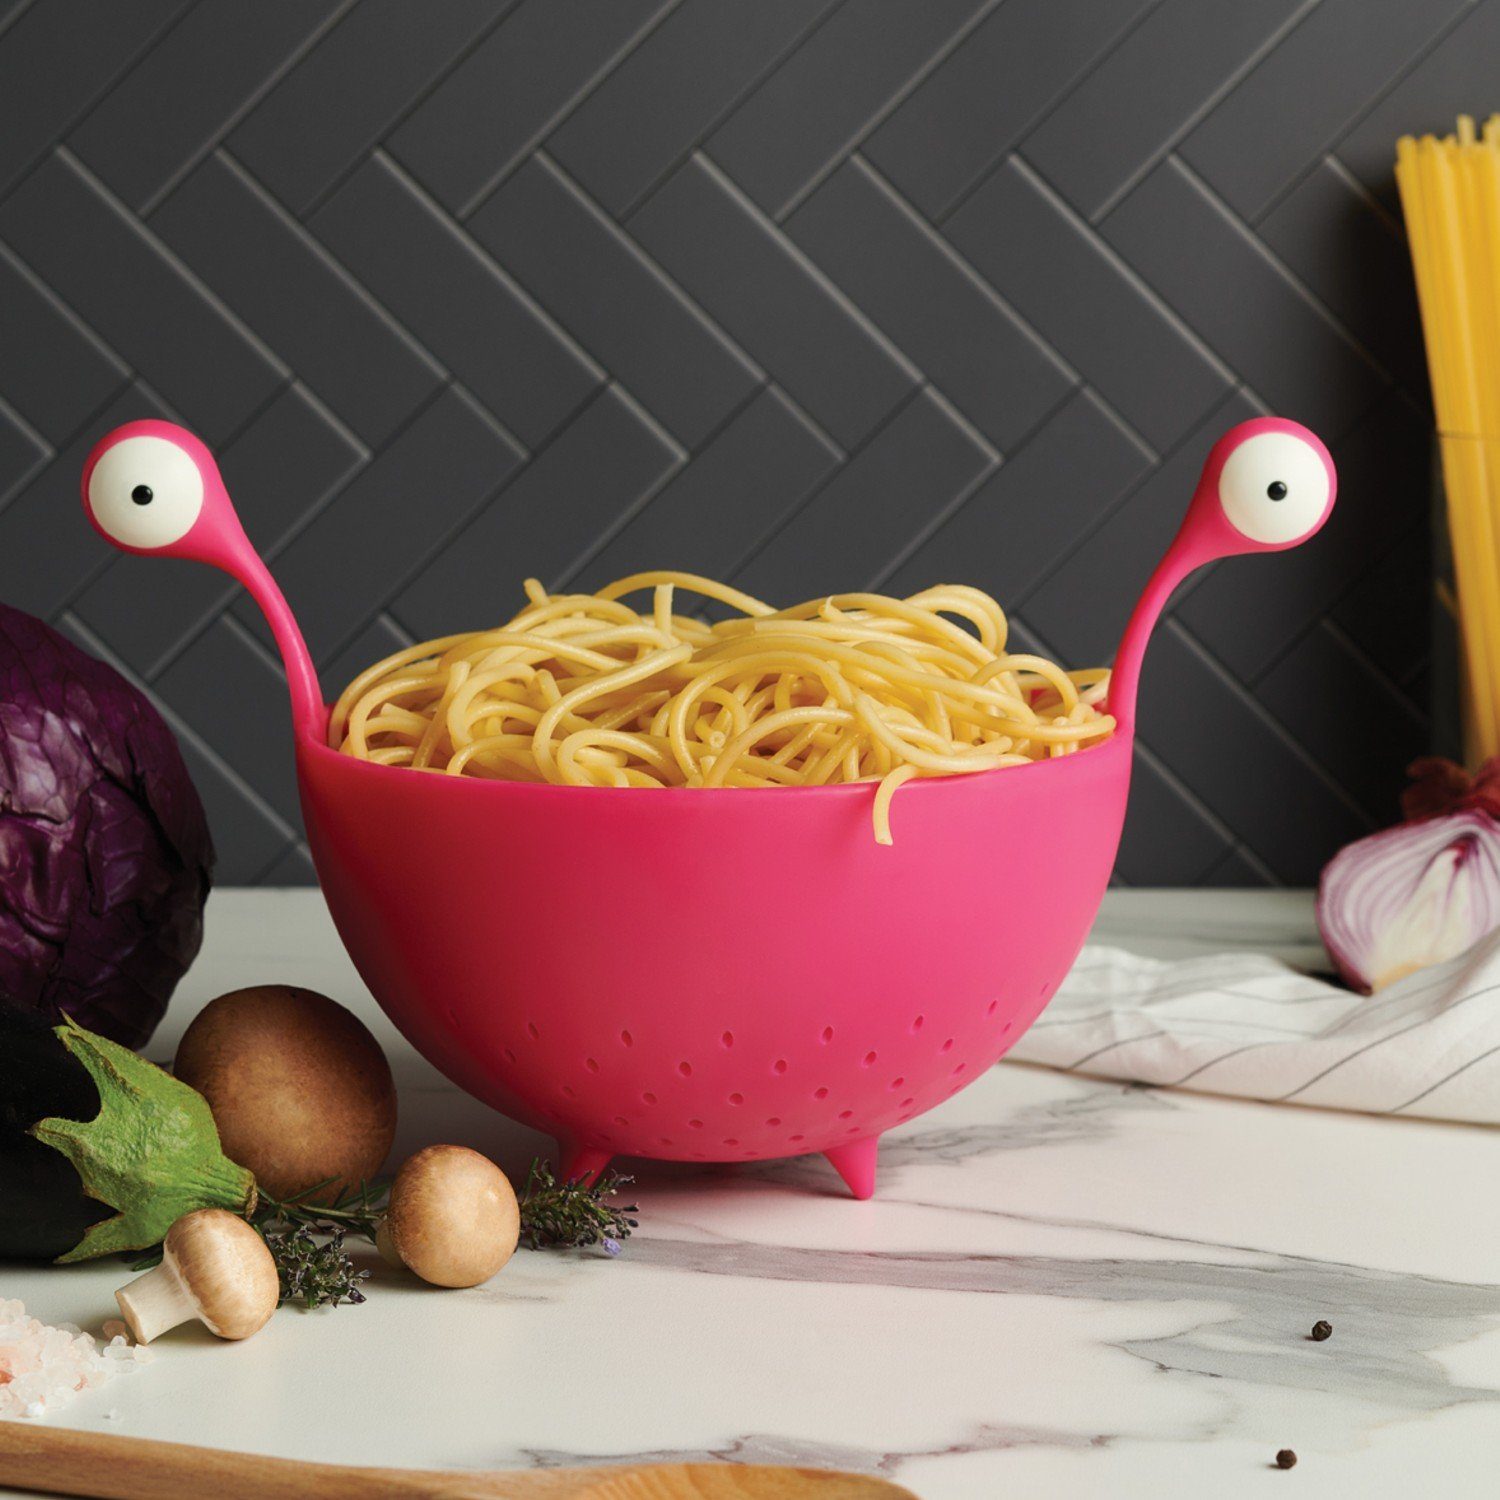 Nudelsieb OTOTO Monster', Kunststoff Nudelsieb pink 'Spaghetti